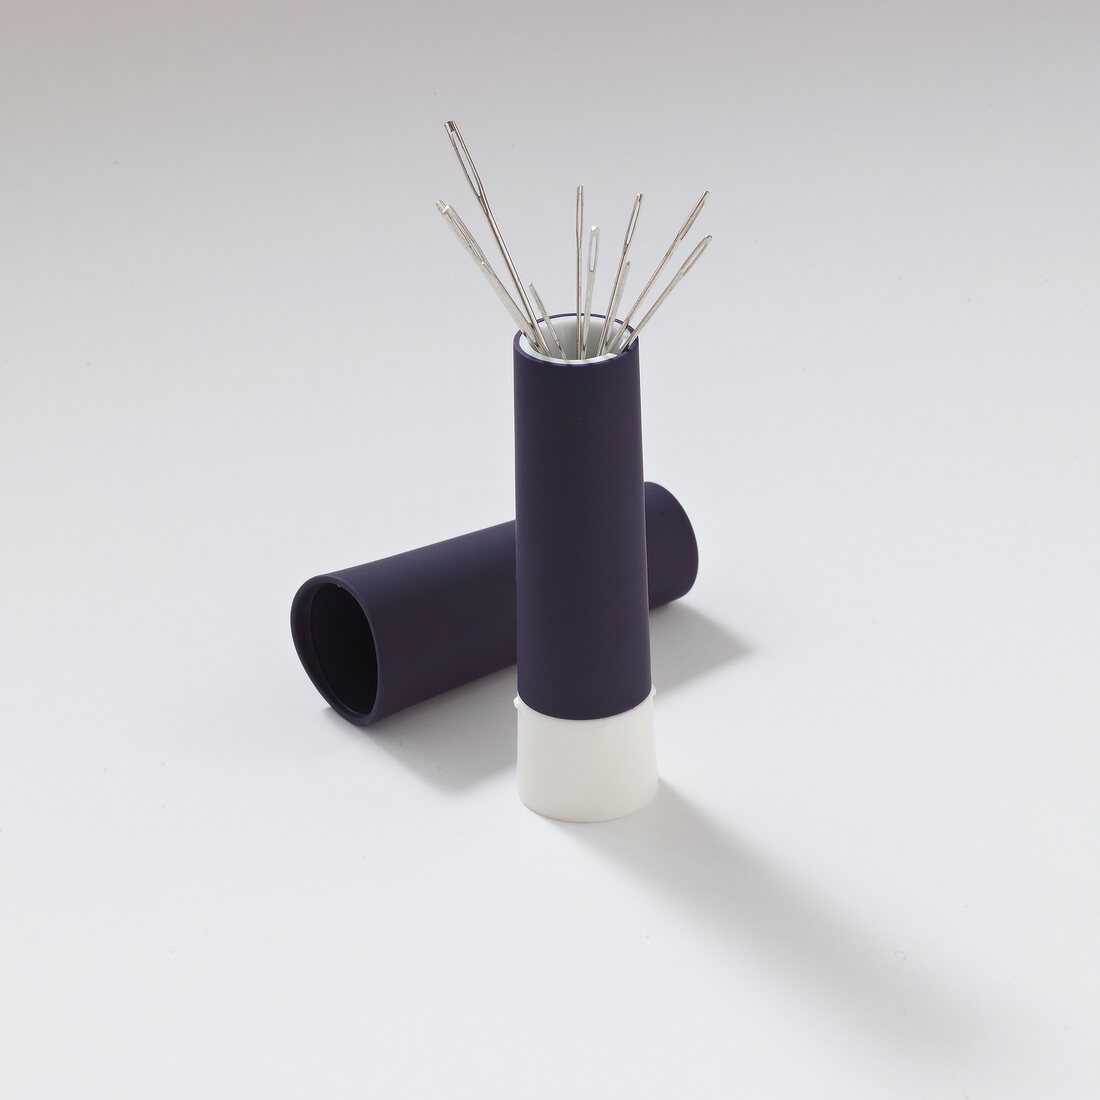 Purple needle twister on white background